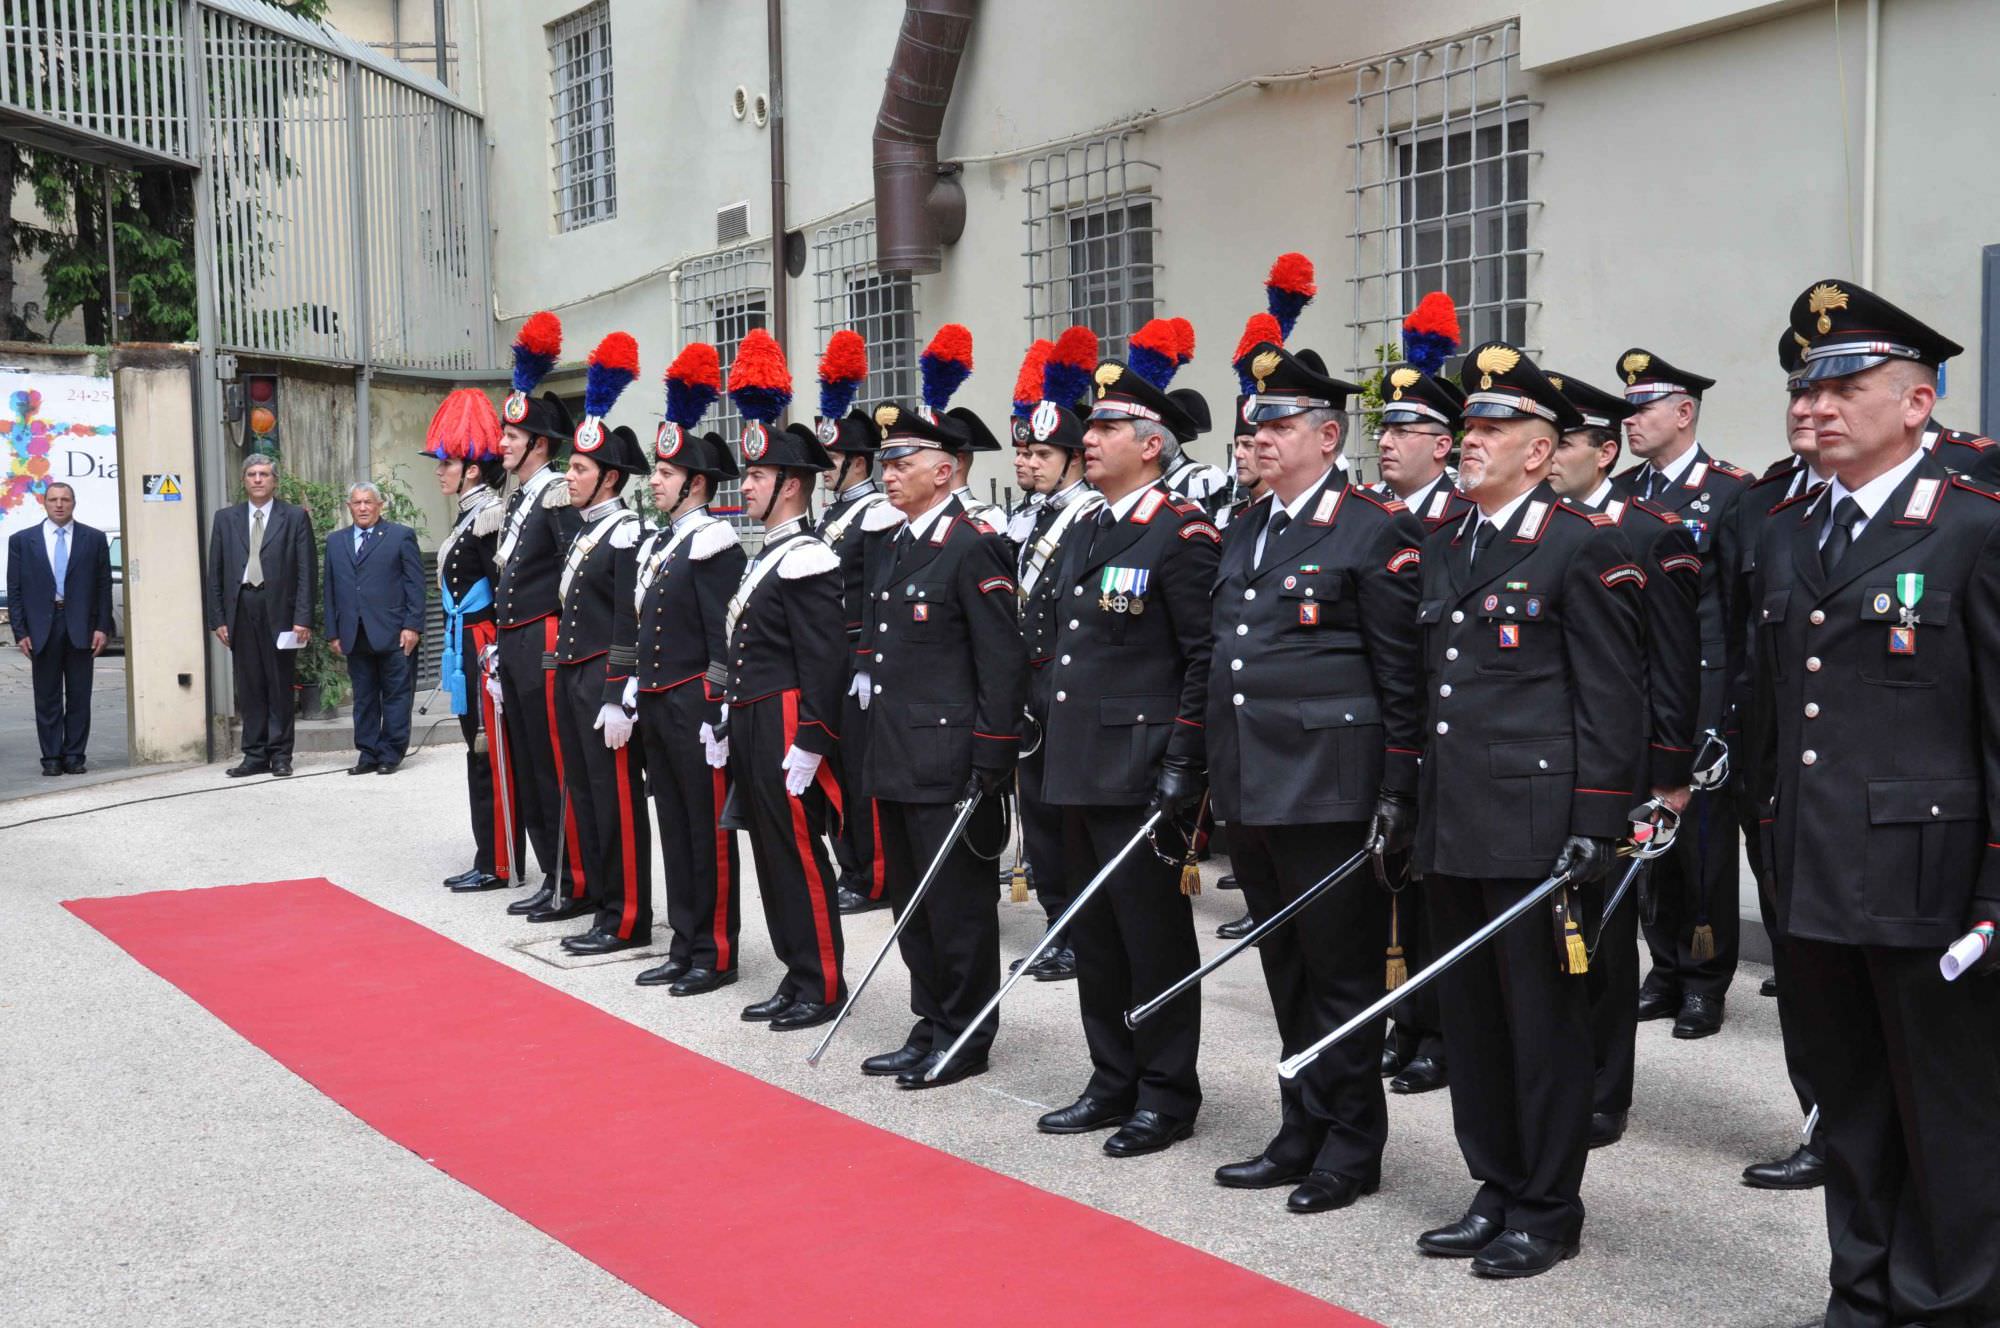 Dieci nuovi militari per garantire sicurezza in Versilia. Arrivano i rinforzi dei Carabinieri